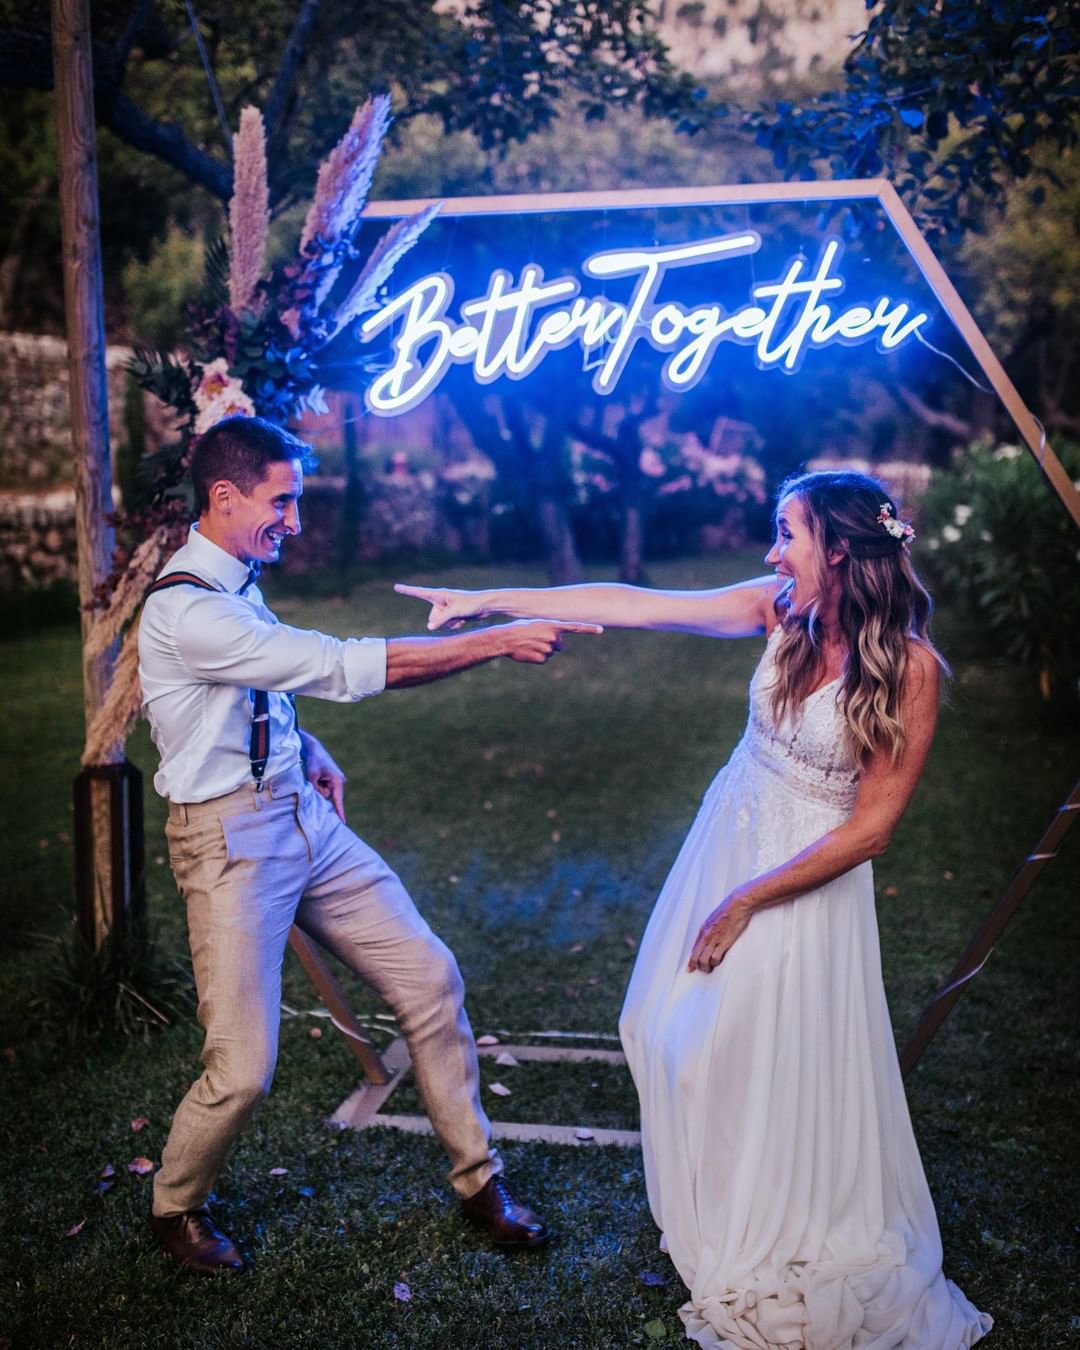 wedding decor ideas romantic neon signs for alter pasion_eventos